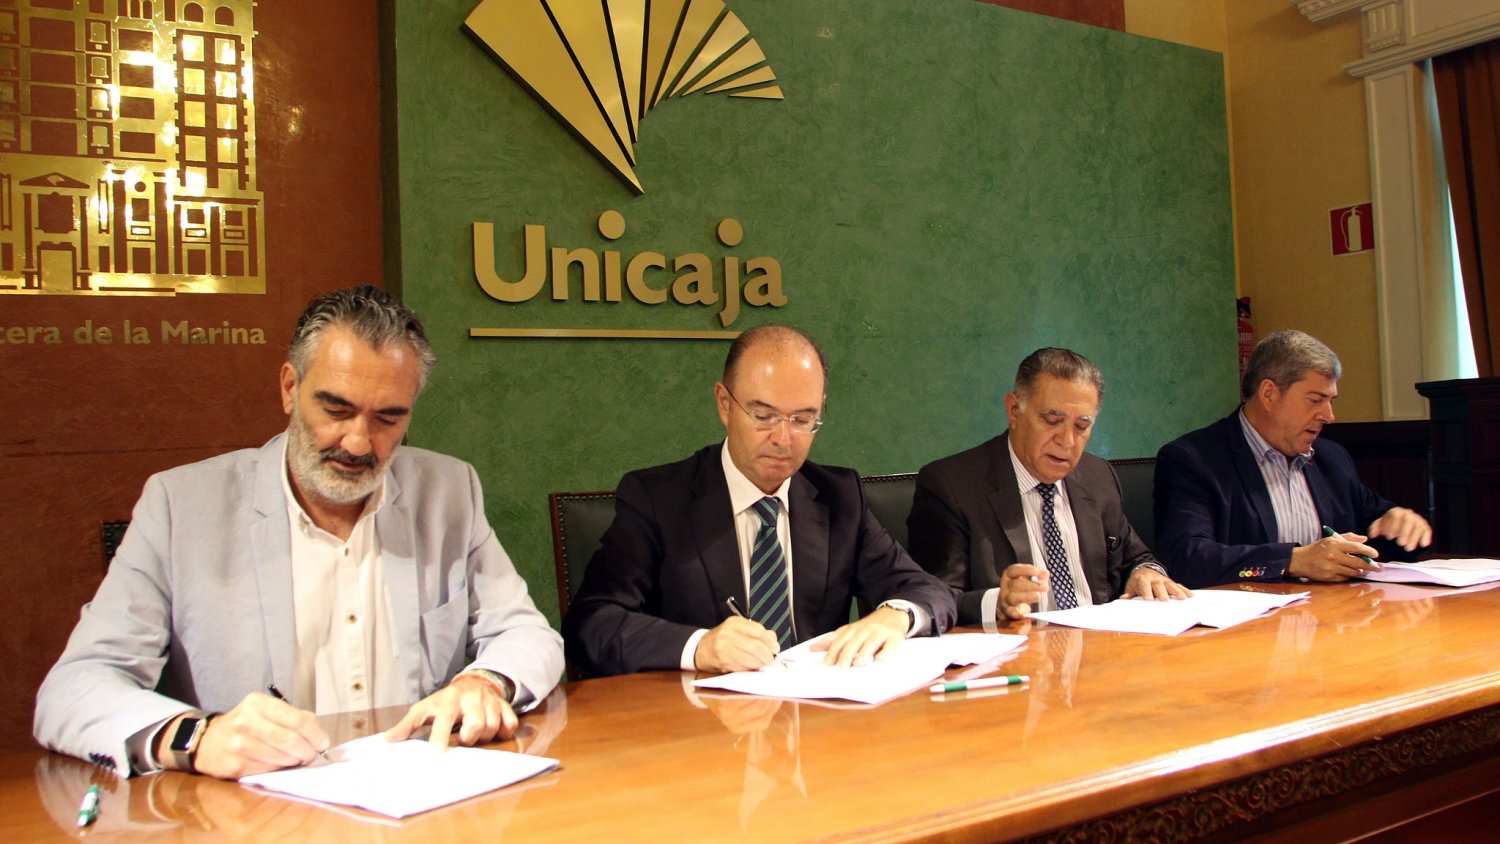 Unicaja apoya un año más al sector turístico mediante acuerdos con tres asociaciones empresariales